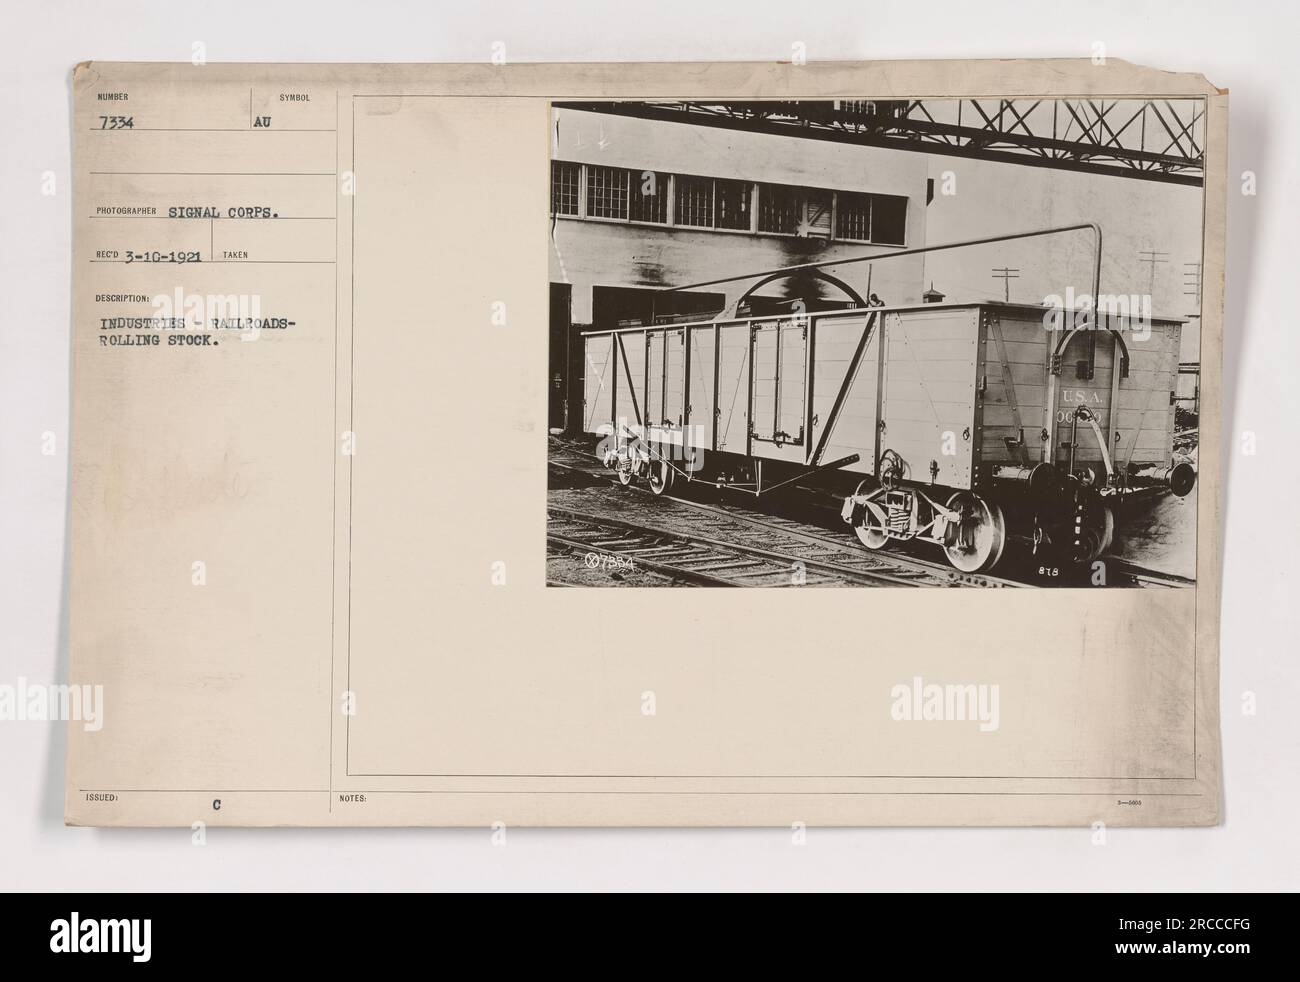 Ein Foto, aufgenommen von einem Fotografen des Signalkorps am 10. März 1921. Das Bild zeigt die Fahrzeuge, die von den Eisenbahnindustrien im Ersten Weltkrieg verwendet wurden Das Foto ist Teil einer Serie mit der Nummer 7334 und stammt aus der AU Issura-Sammlung. Es werden zusätzliche Hinweise erwähnt, die jedoch nicht ohne weitere Informationen ermittelt werden können. Stockfoto